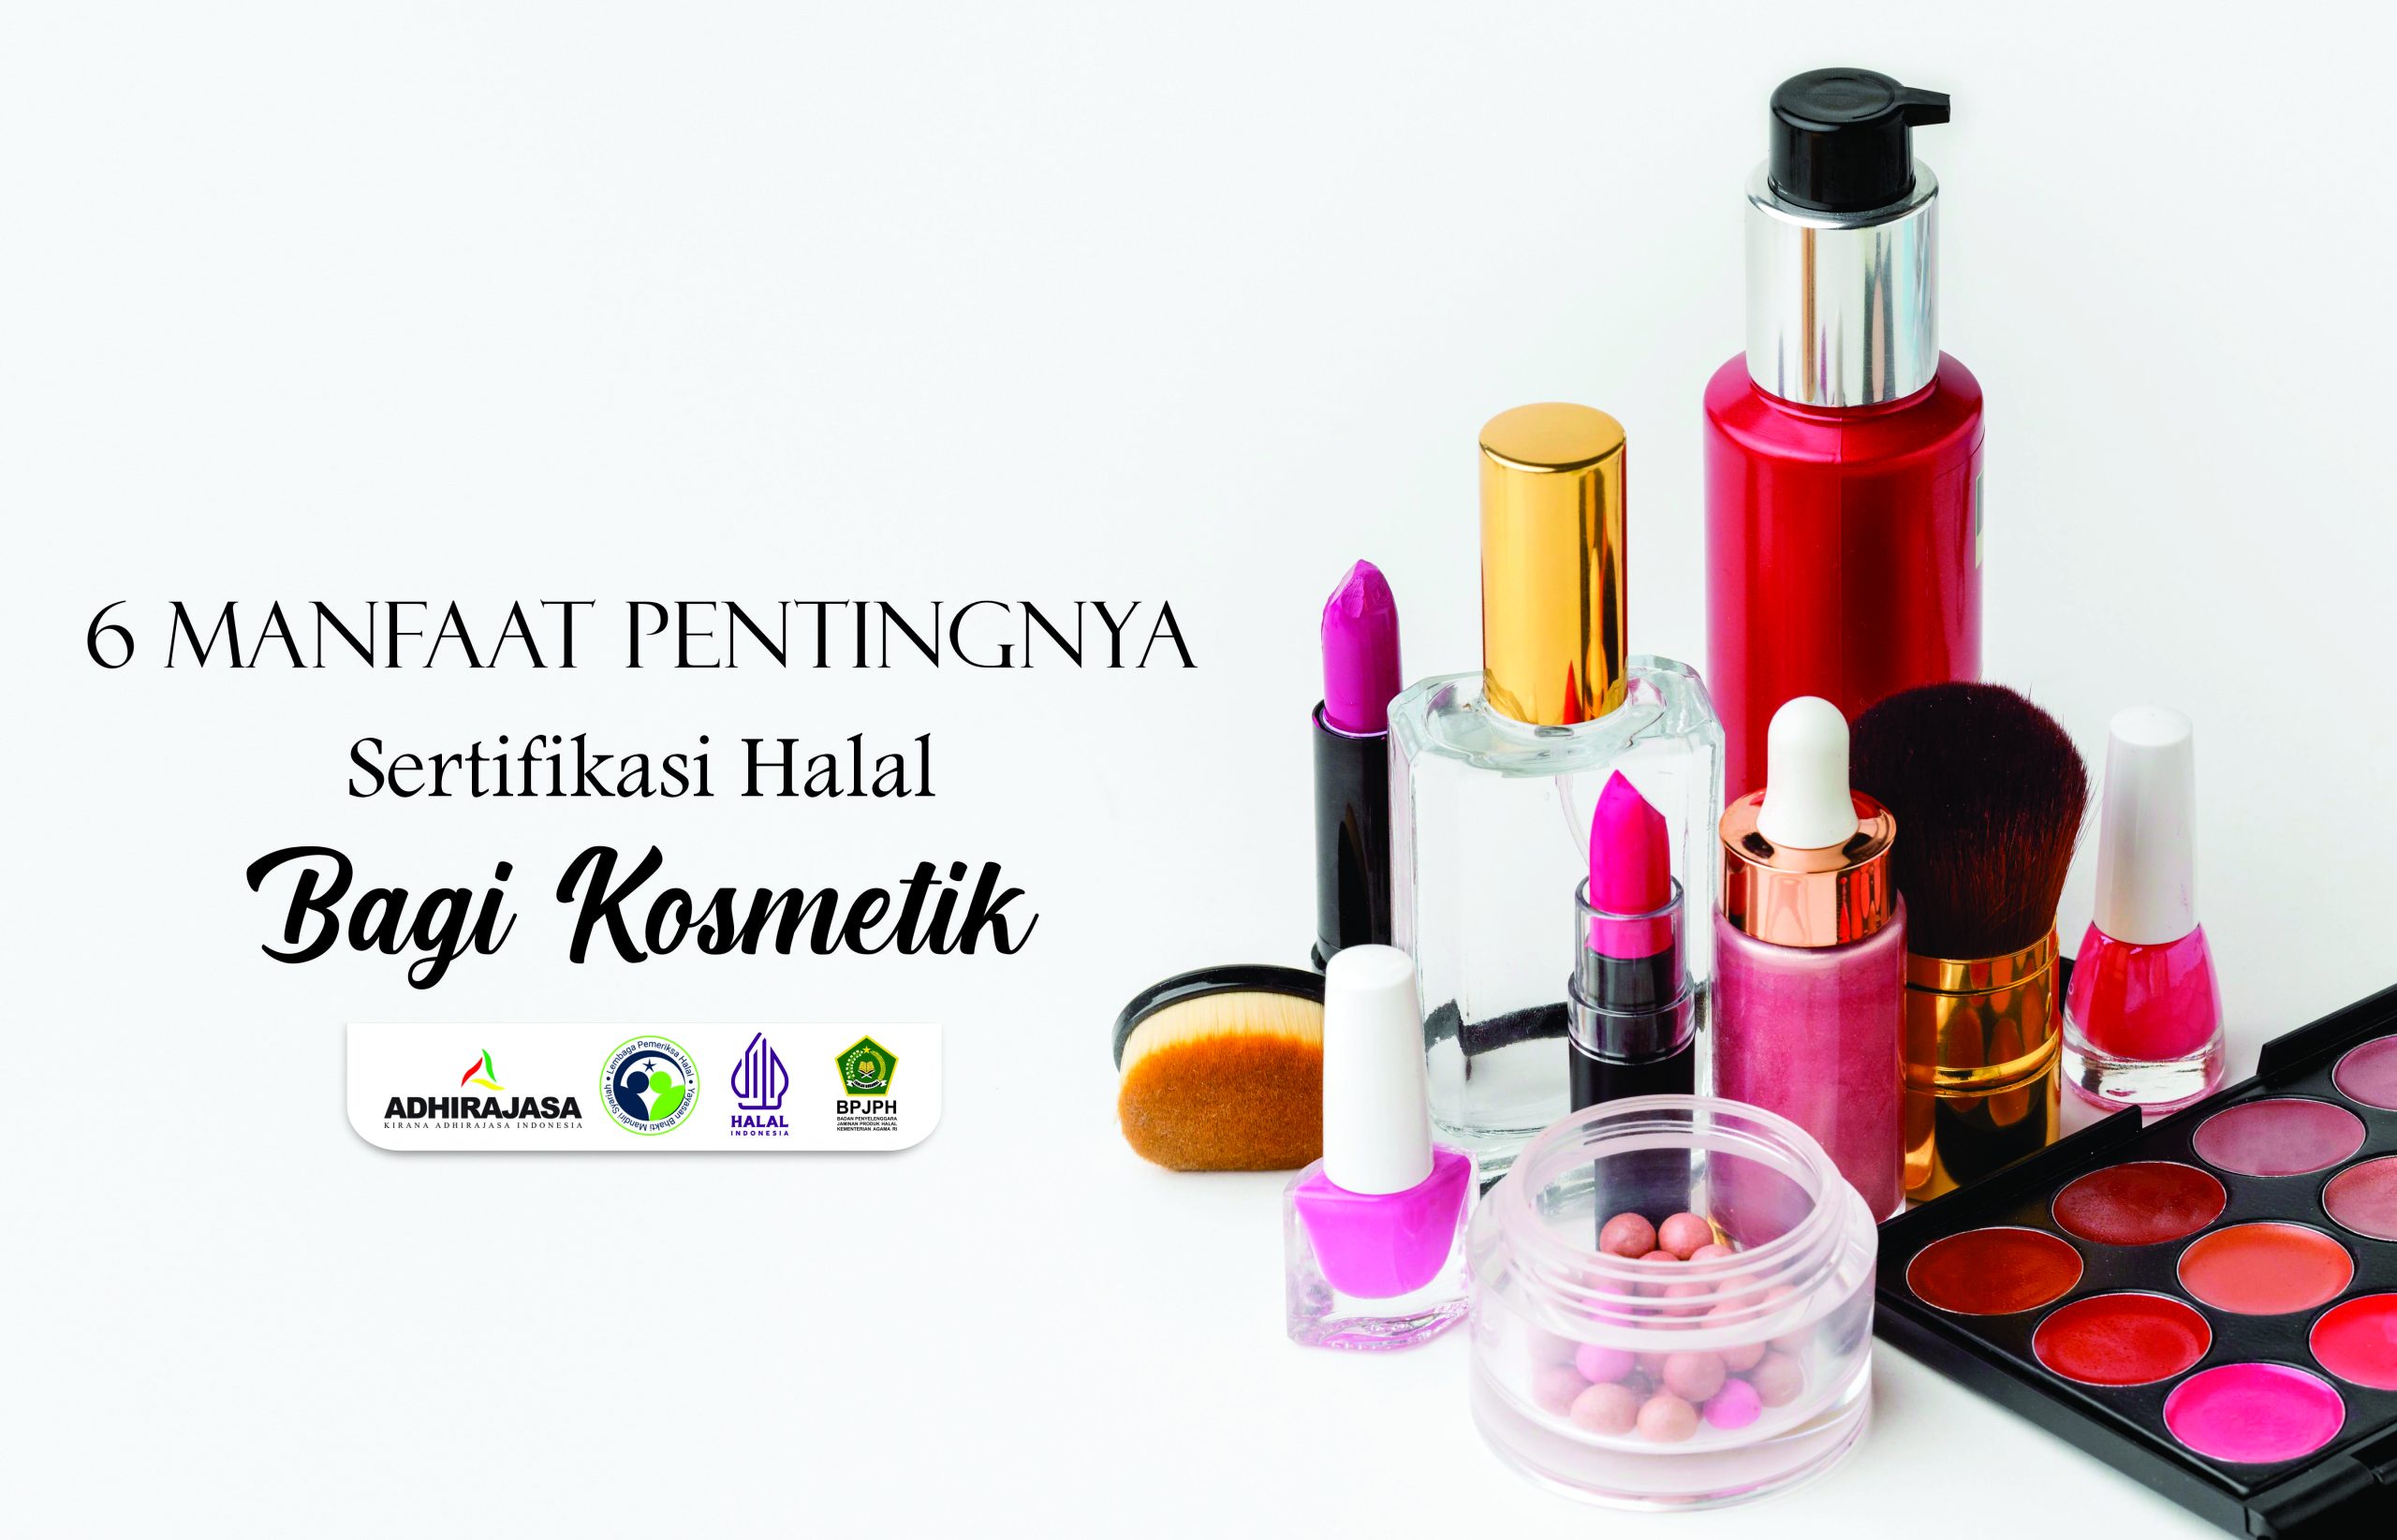 Manfaat Sertifikasi Halal pada Kosmetik